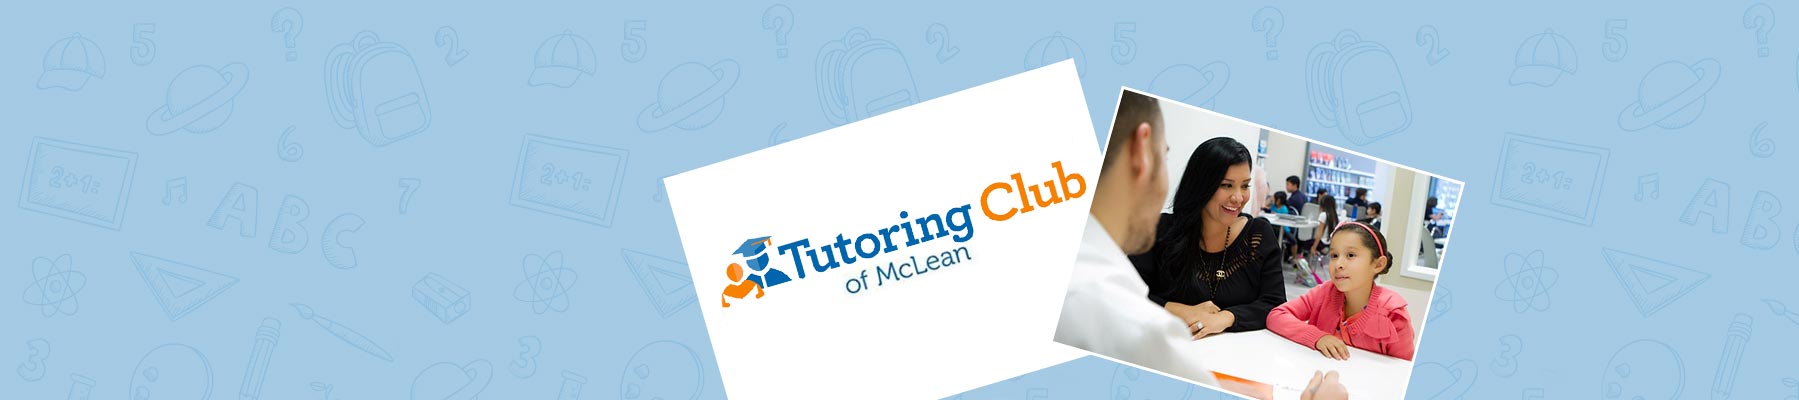 Tutoring Club of McLean